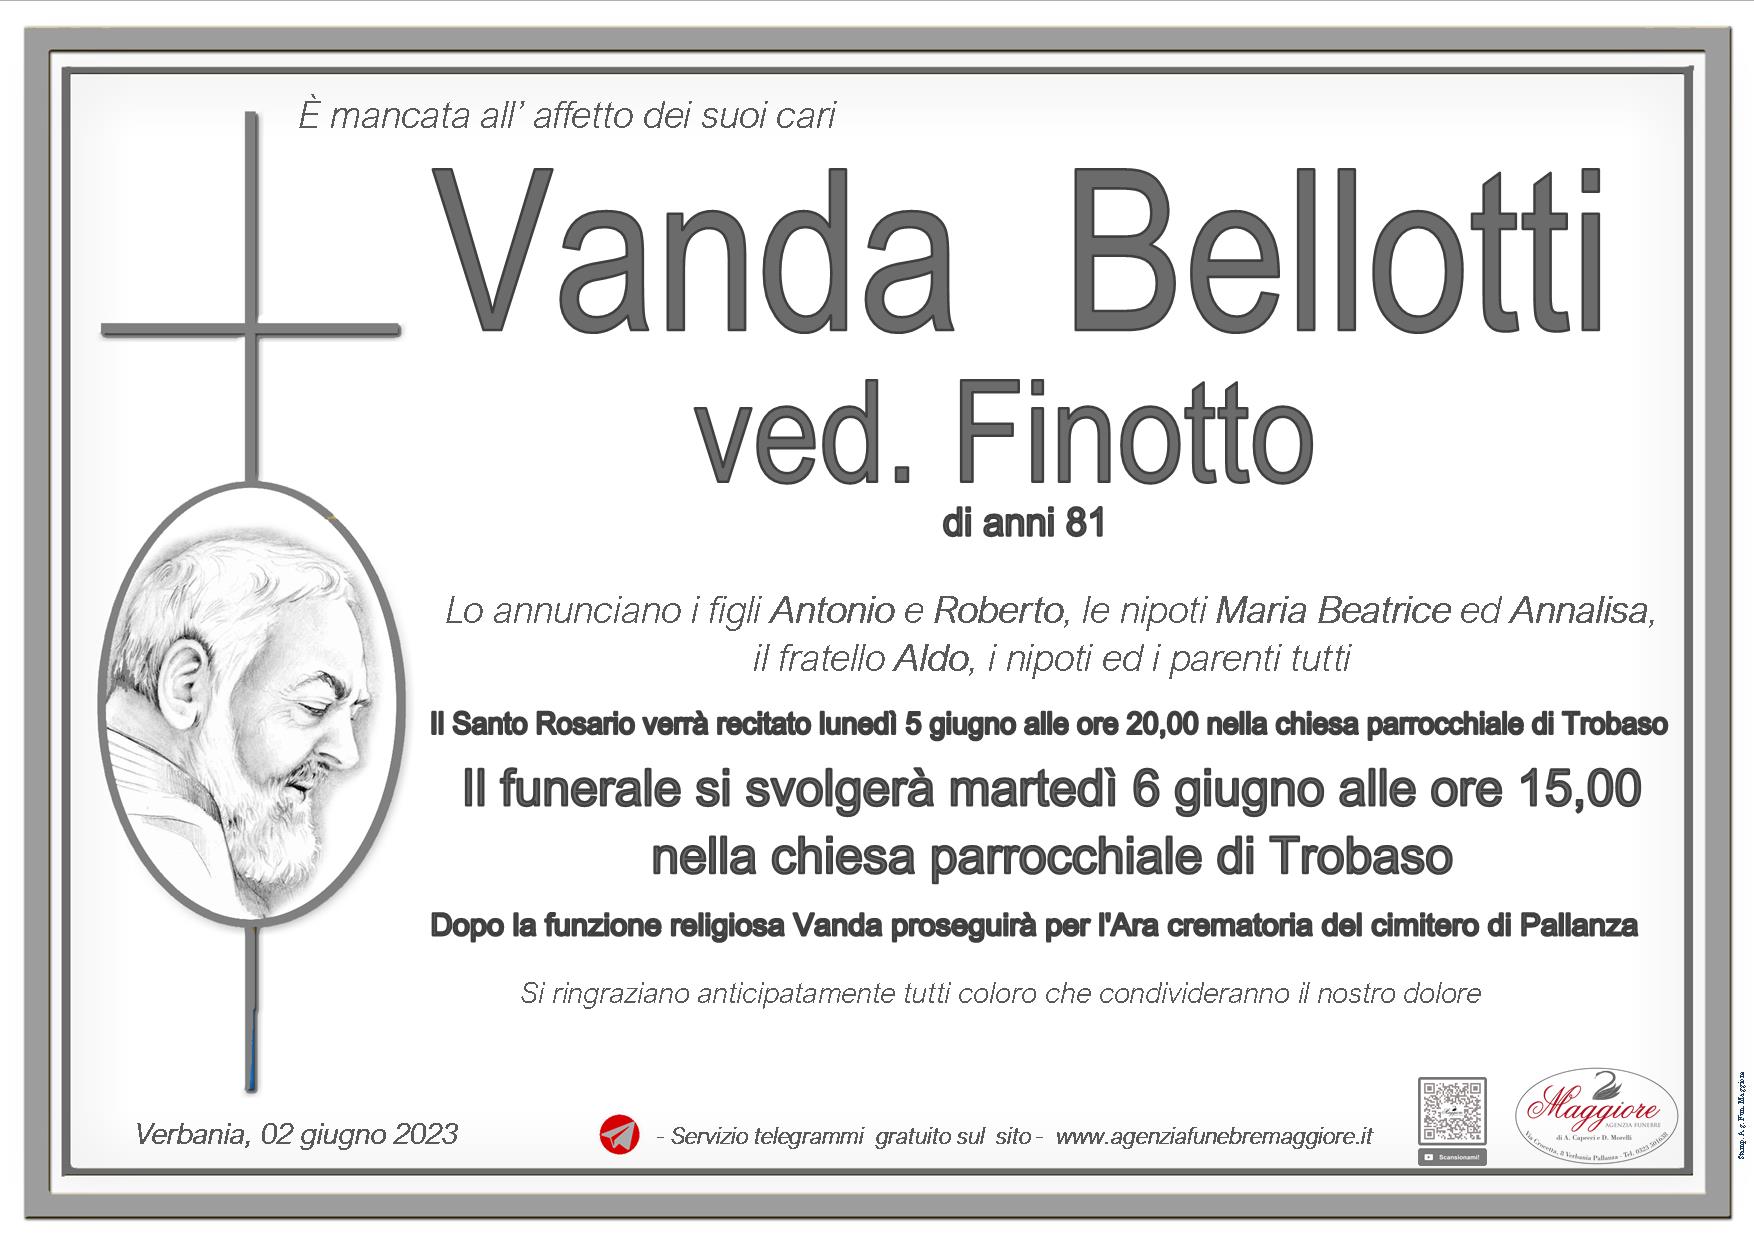 Vanda Bellotti ved. Finotto